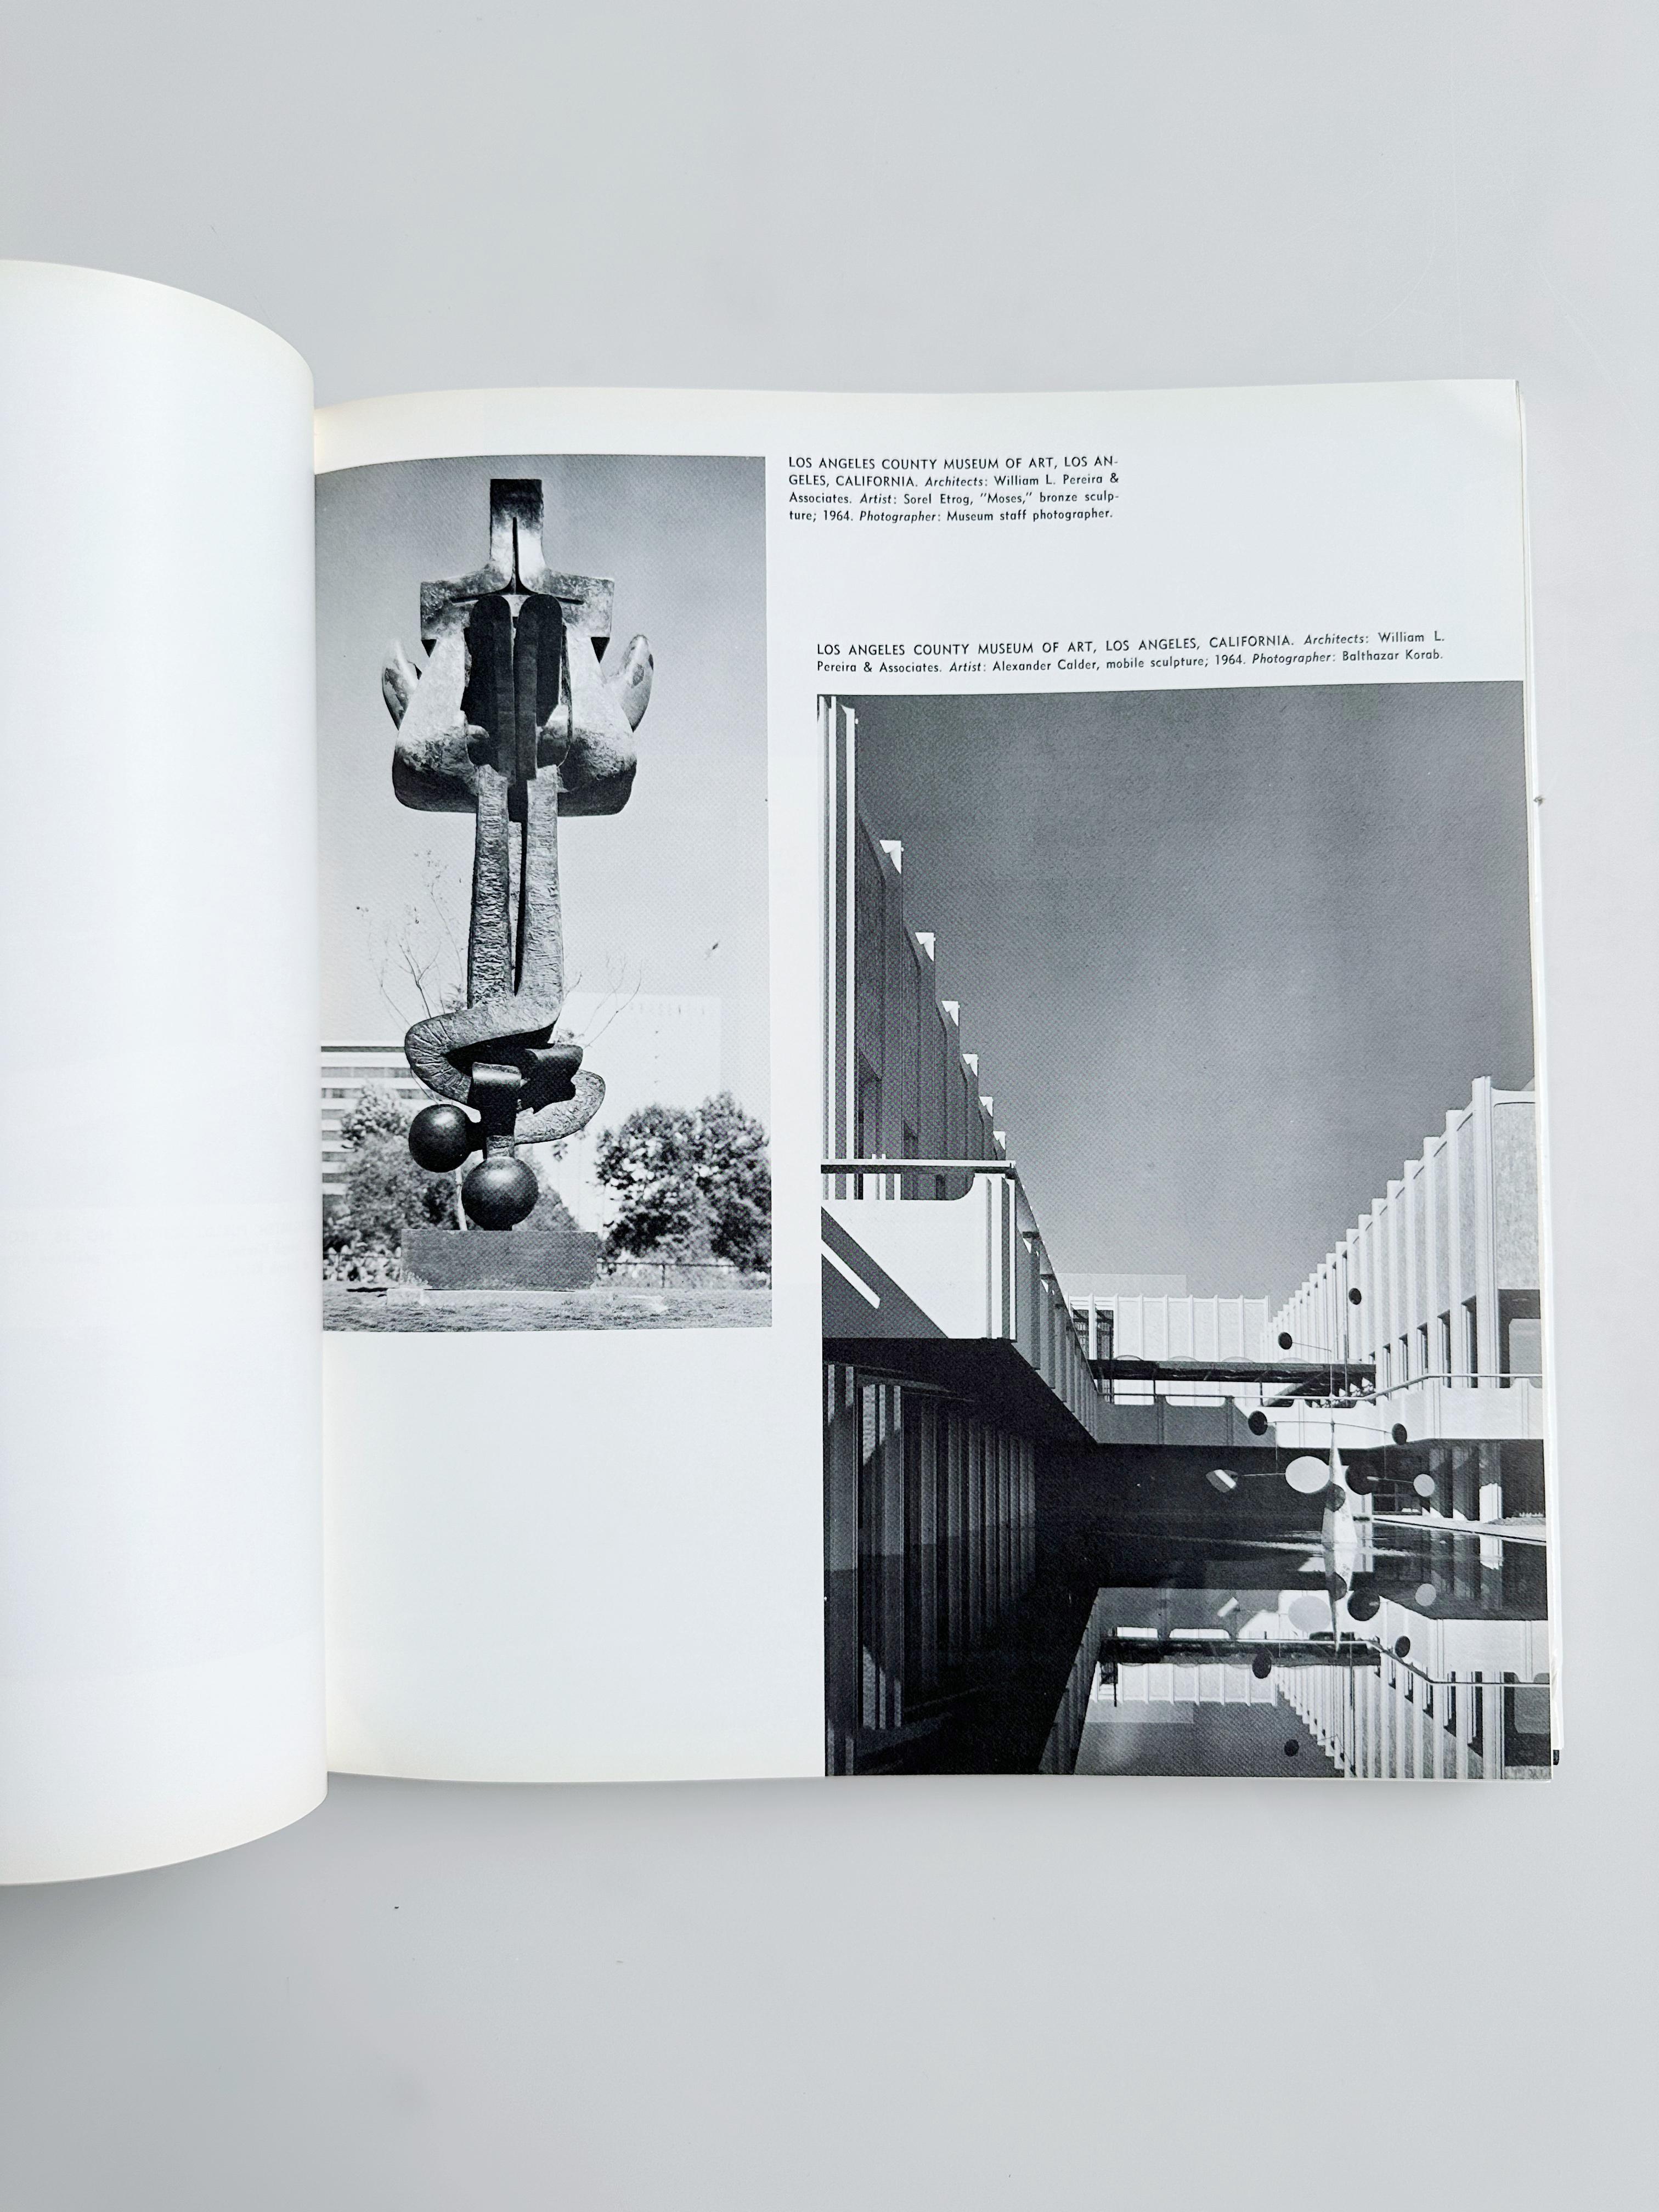 Kunst in der Architektur, von Louis G. Redstone, 1968

Hardcover, Schutzumschlag

//

10 x 11.5
256 Seiten
// u2028

*Guter Zustand, leichte Gebrauchsspuren am Schutzumschlag